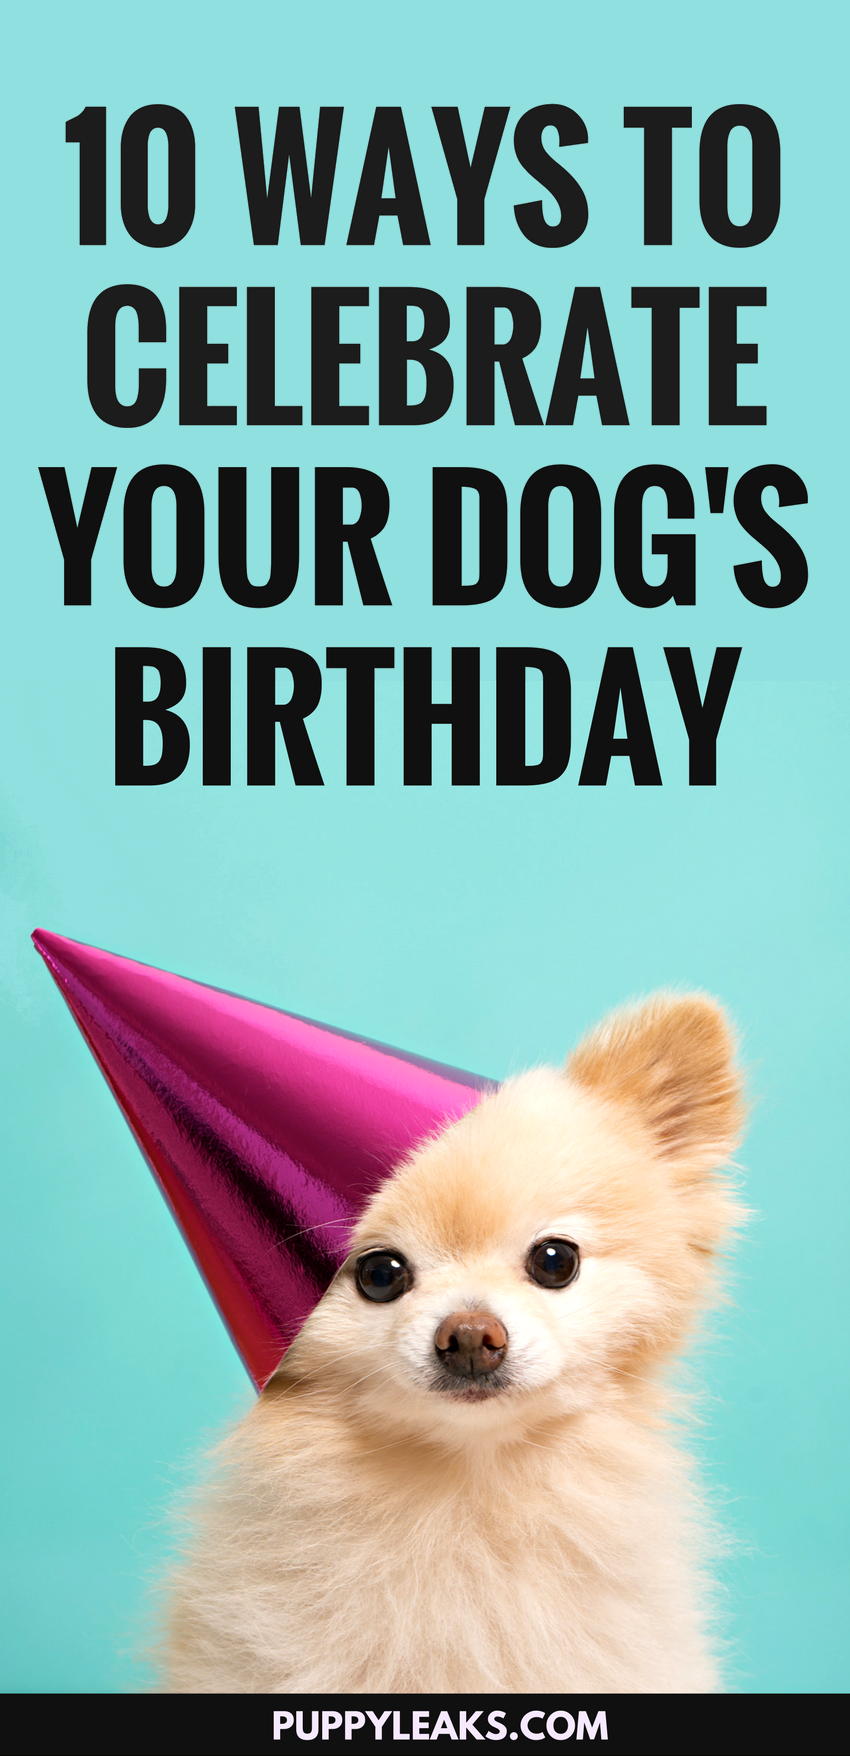 10 modi divertenti per festeggiare il compleanno del tuo cane